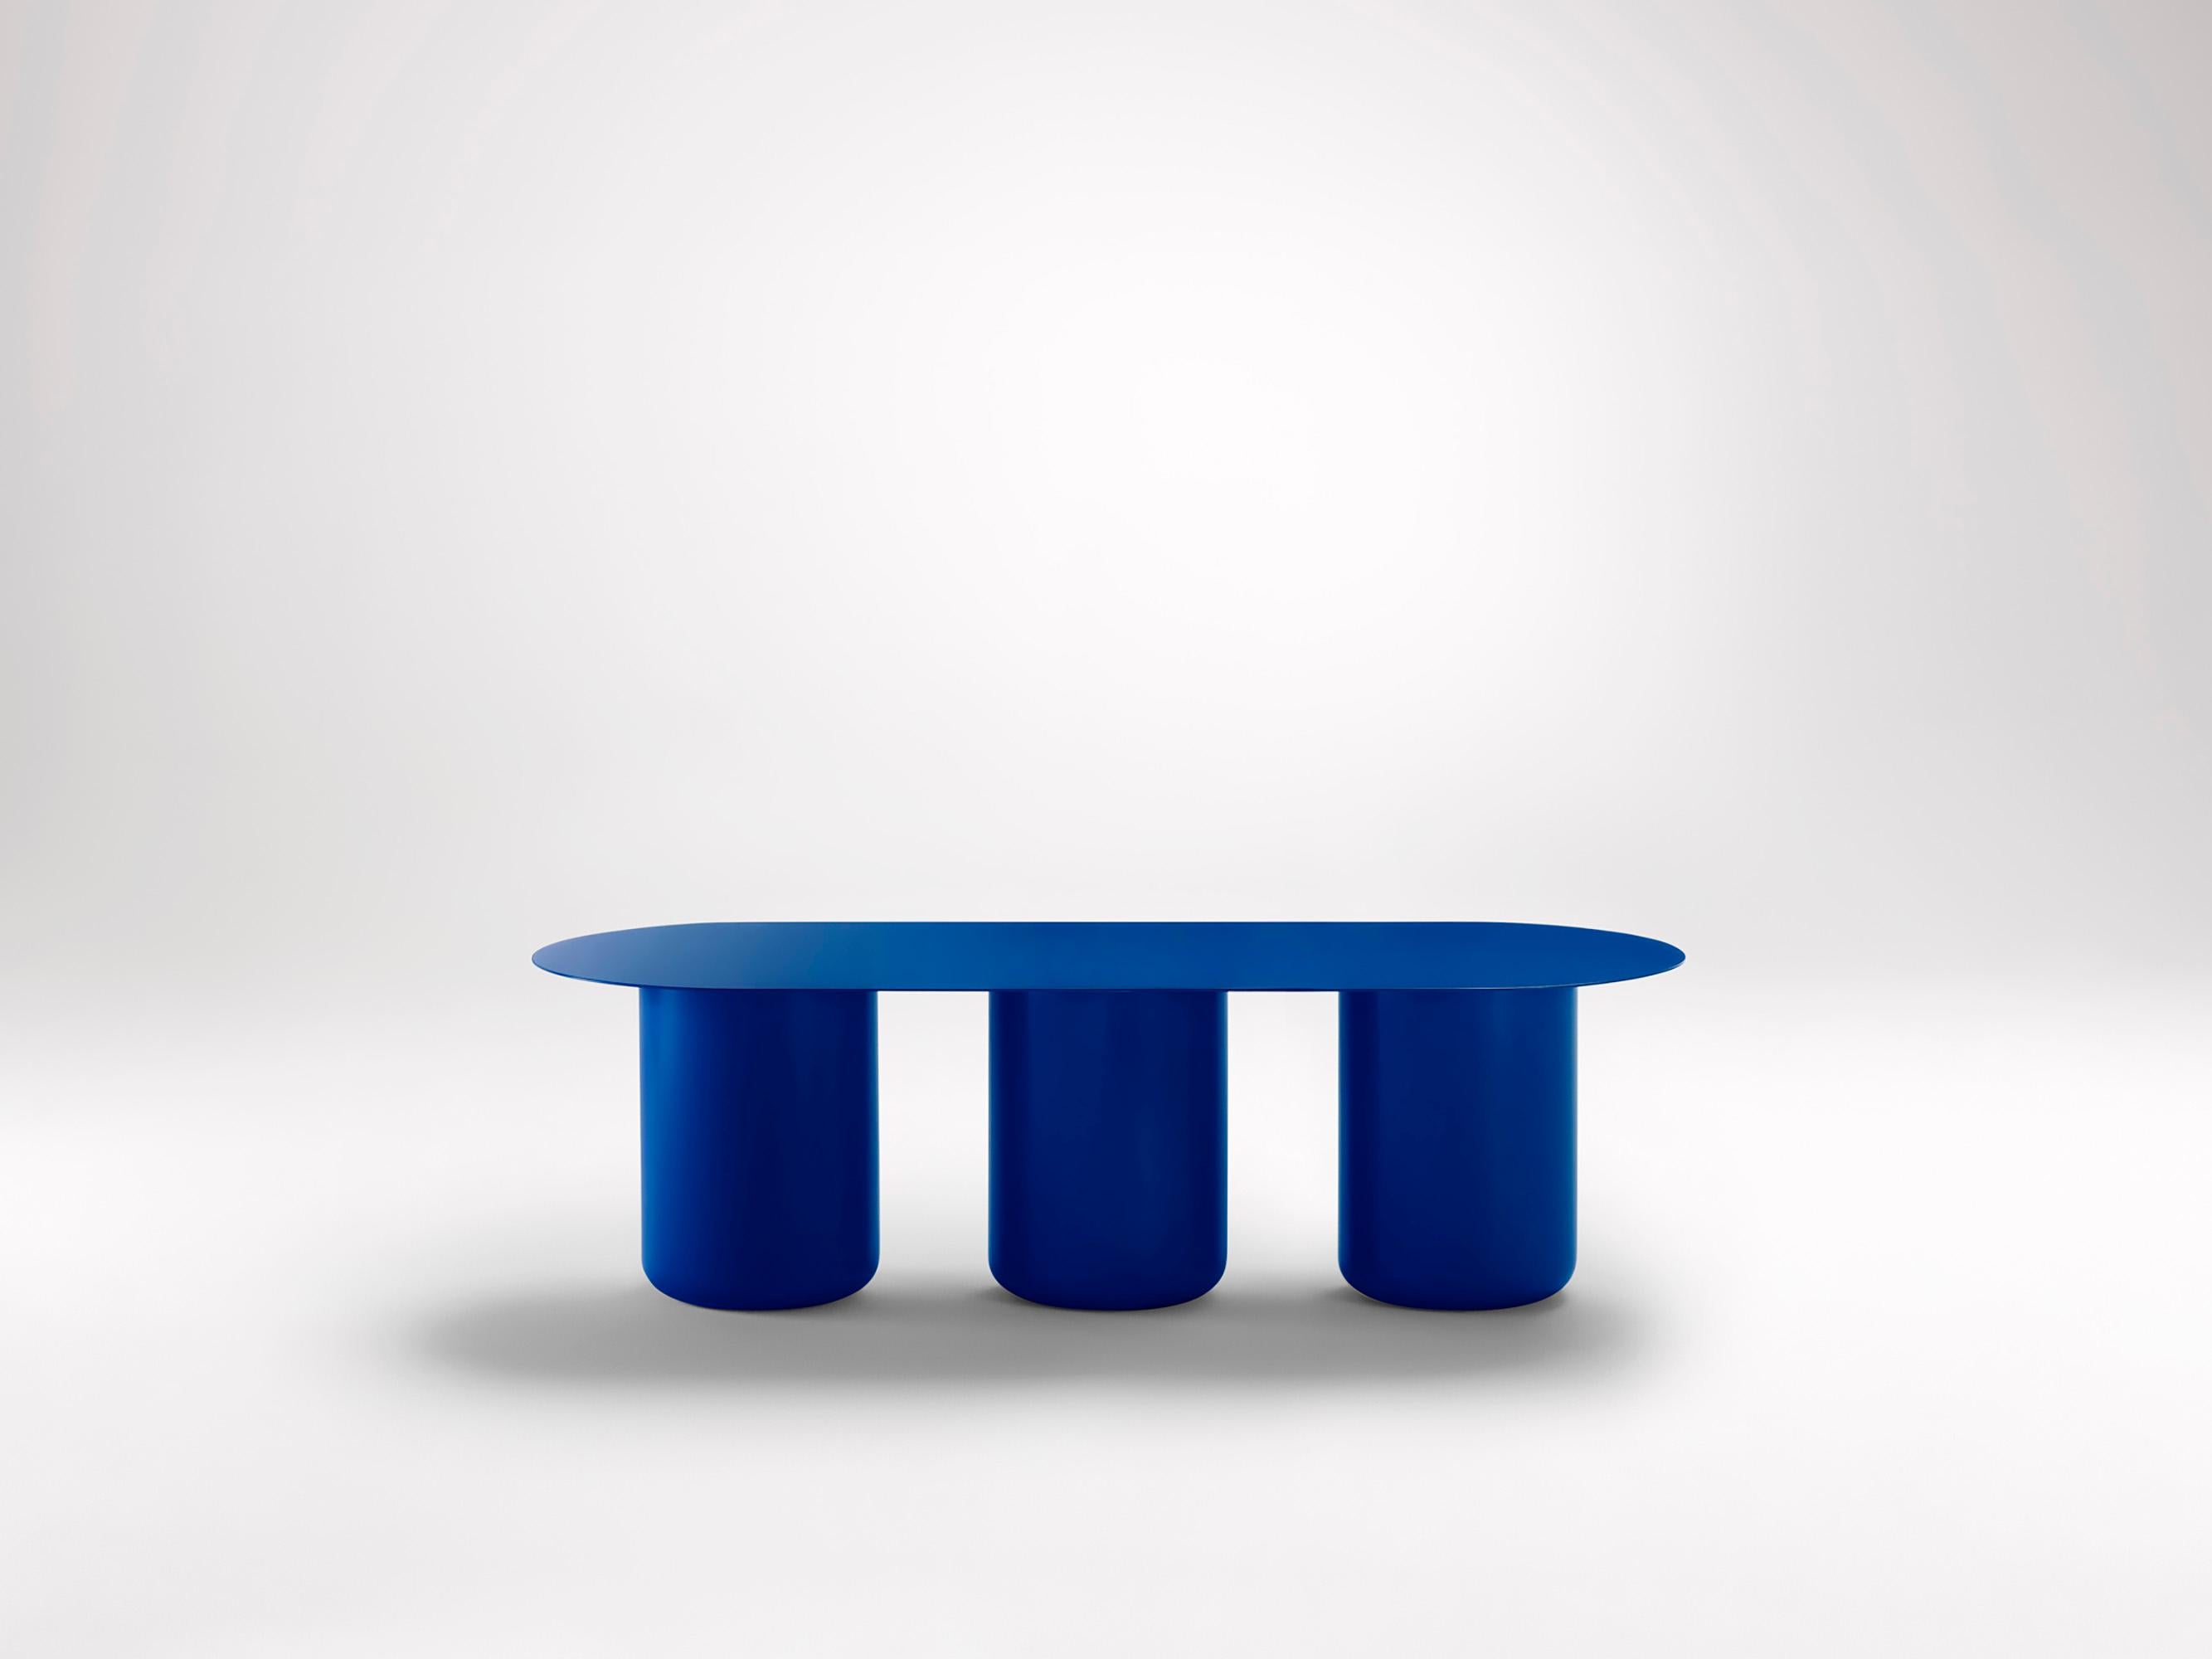 Vivid Blue Tisch 03 von Coco Flip
Abmessungen: T 48 / 122 x H 32 / 36 / 40 / 42 cm
MATERIALIEN: Baustahl, pulverbeschichtet mit Zinkgrundierung. 
Gewicht: 30 kg

Coco Flip ist ein Studio für Möbel- und Beleuchtungsdesign in Melbourne, das von uns,